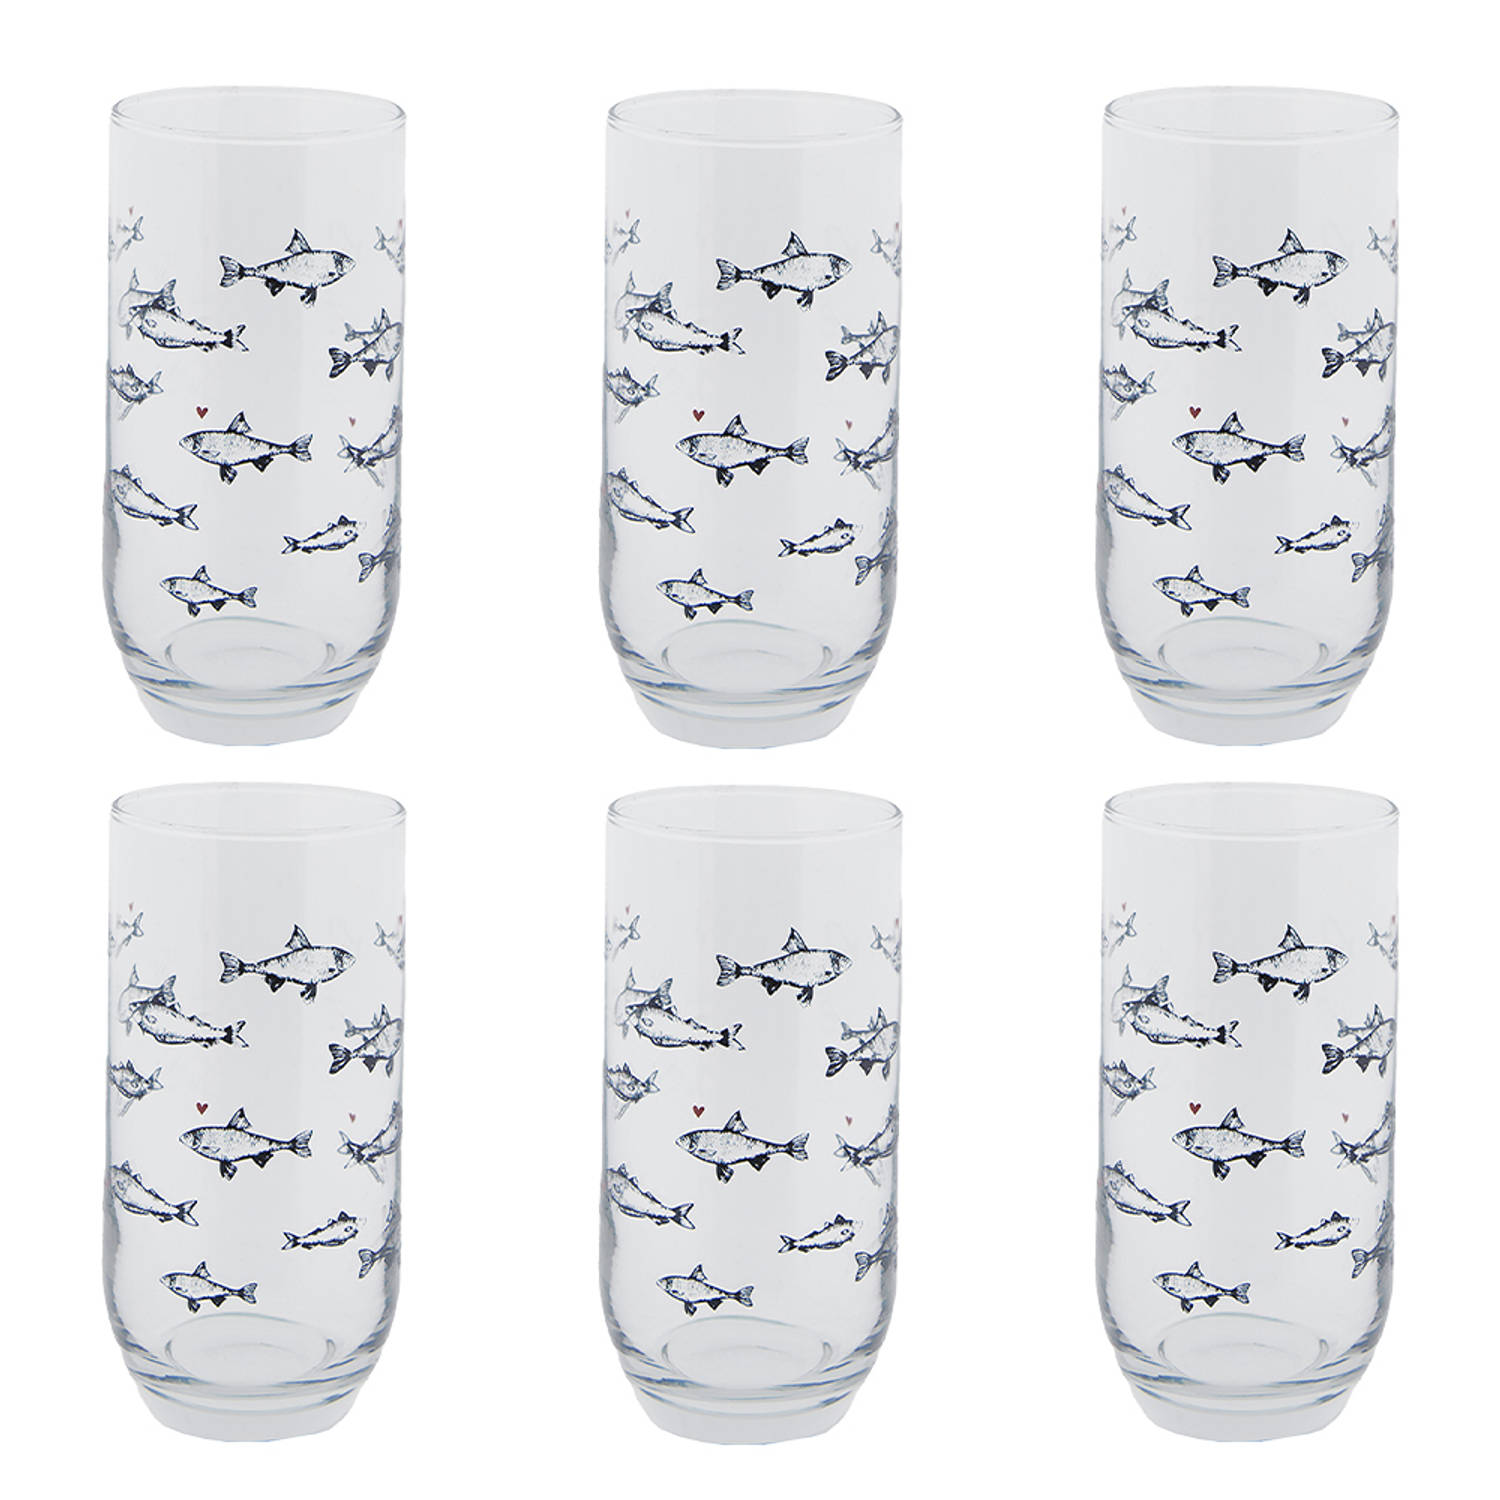 HAES DECO - Waterglas, Drinkglas set van 6 glazen - inhoud glas 380 ml - formaat glas Ø 7x14 cm - Collectie: Sun Sea & Fish - Waterglazen, Drinkglazen